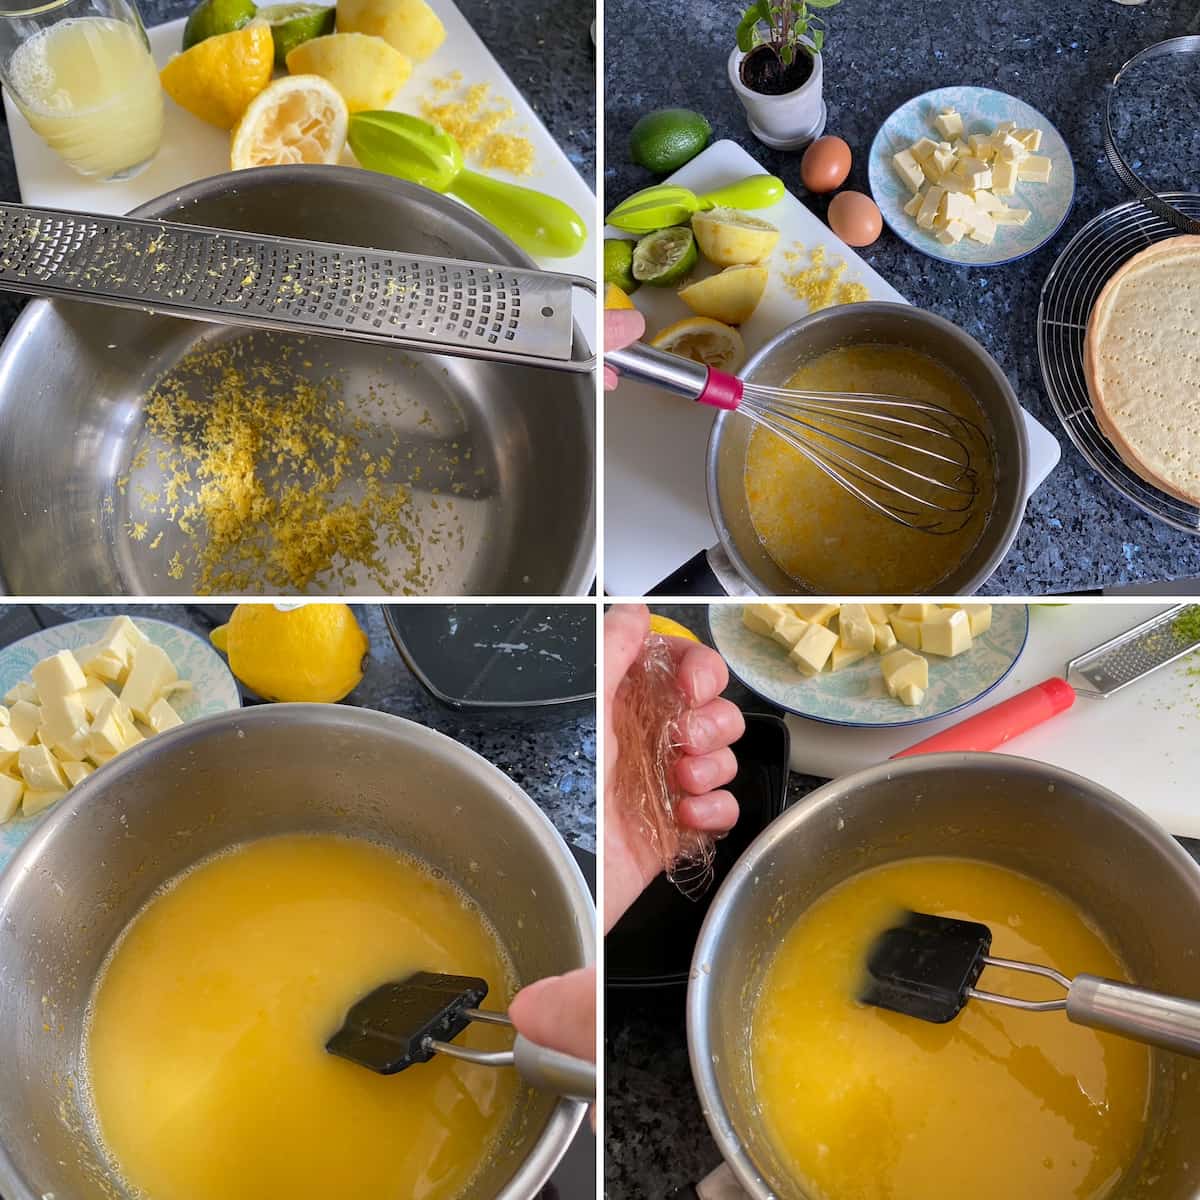 step by step recipe to prepare a tarte au citron filling